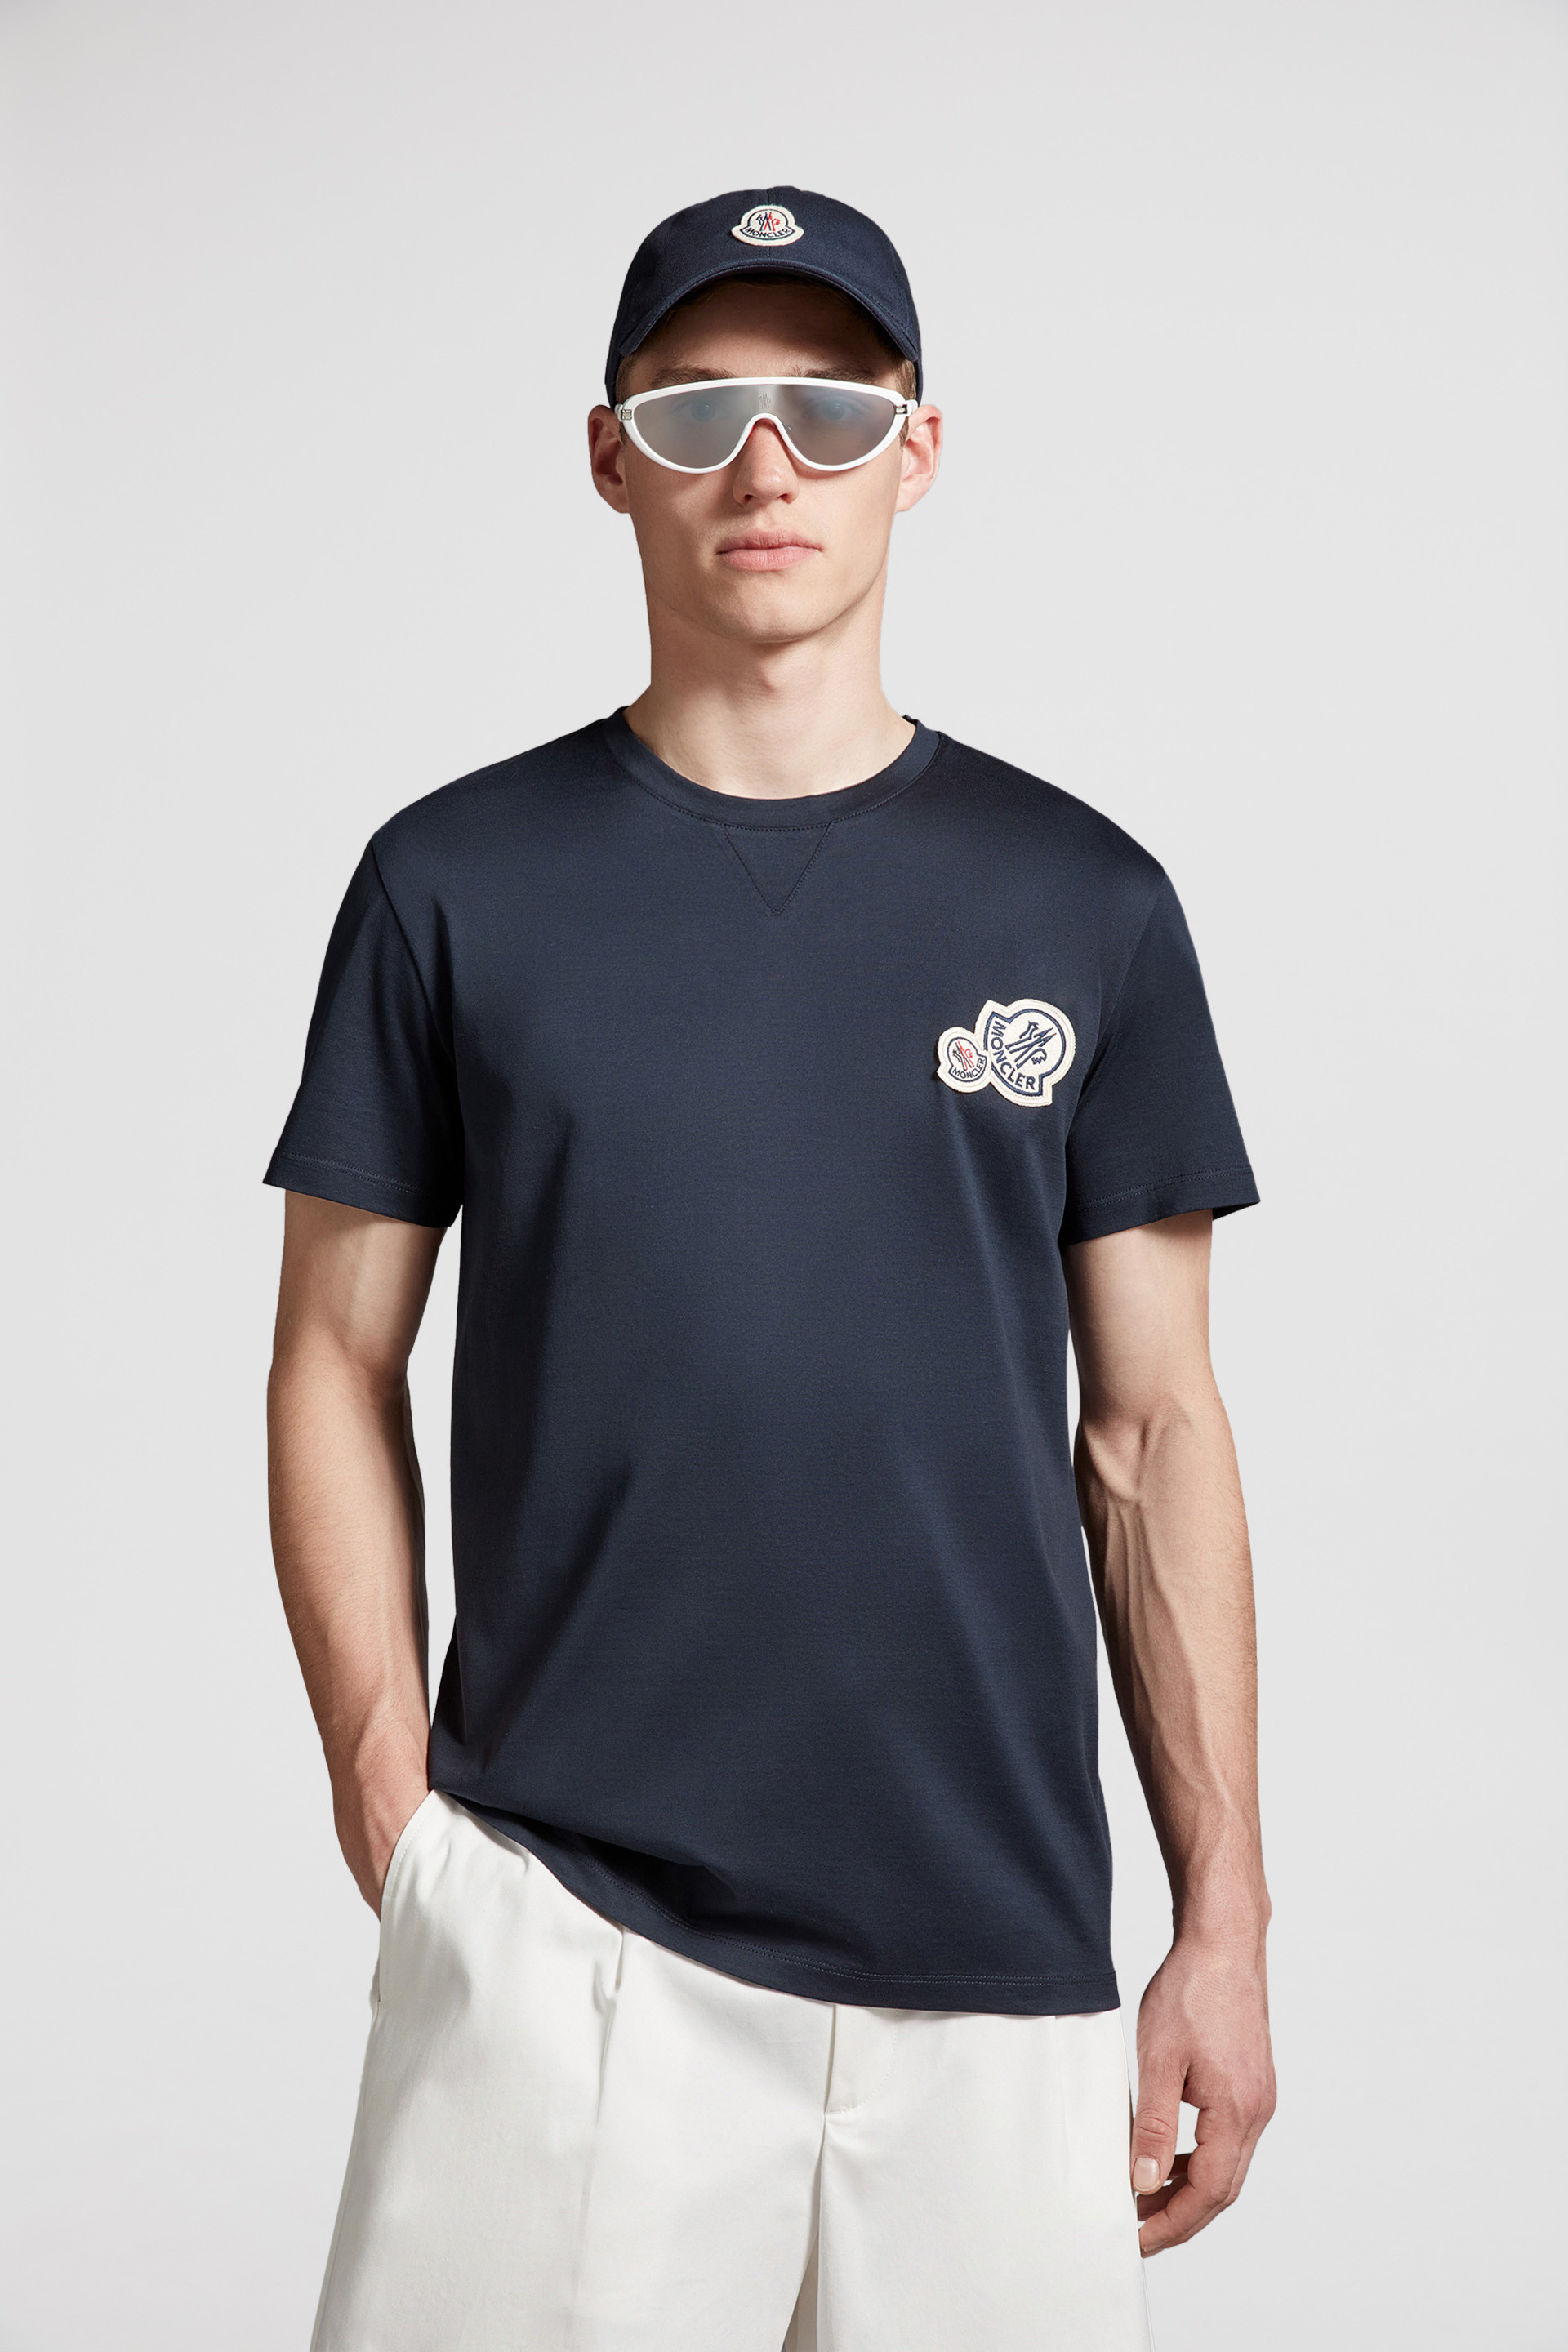 モンクレール　水色　ブルー　半袖　Tシャツ　パイナップル柄　可愛い　スポーツ質屋古物市場ストア商品